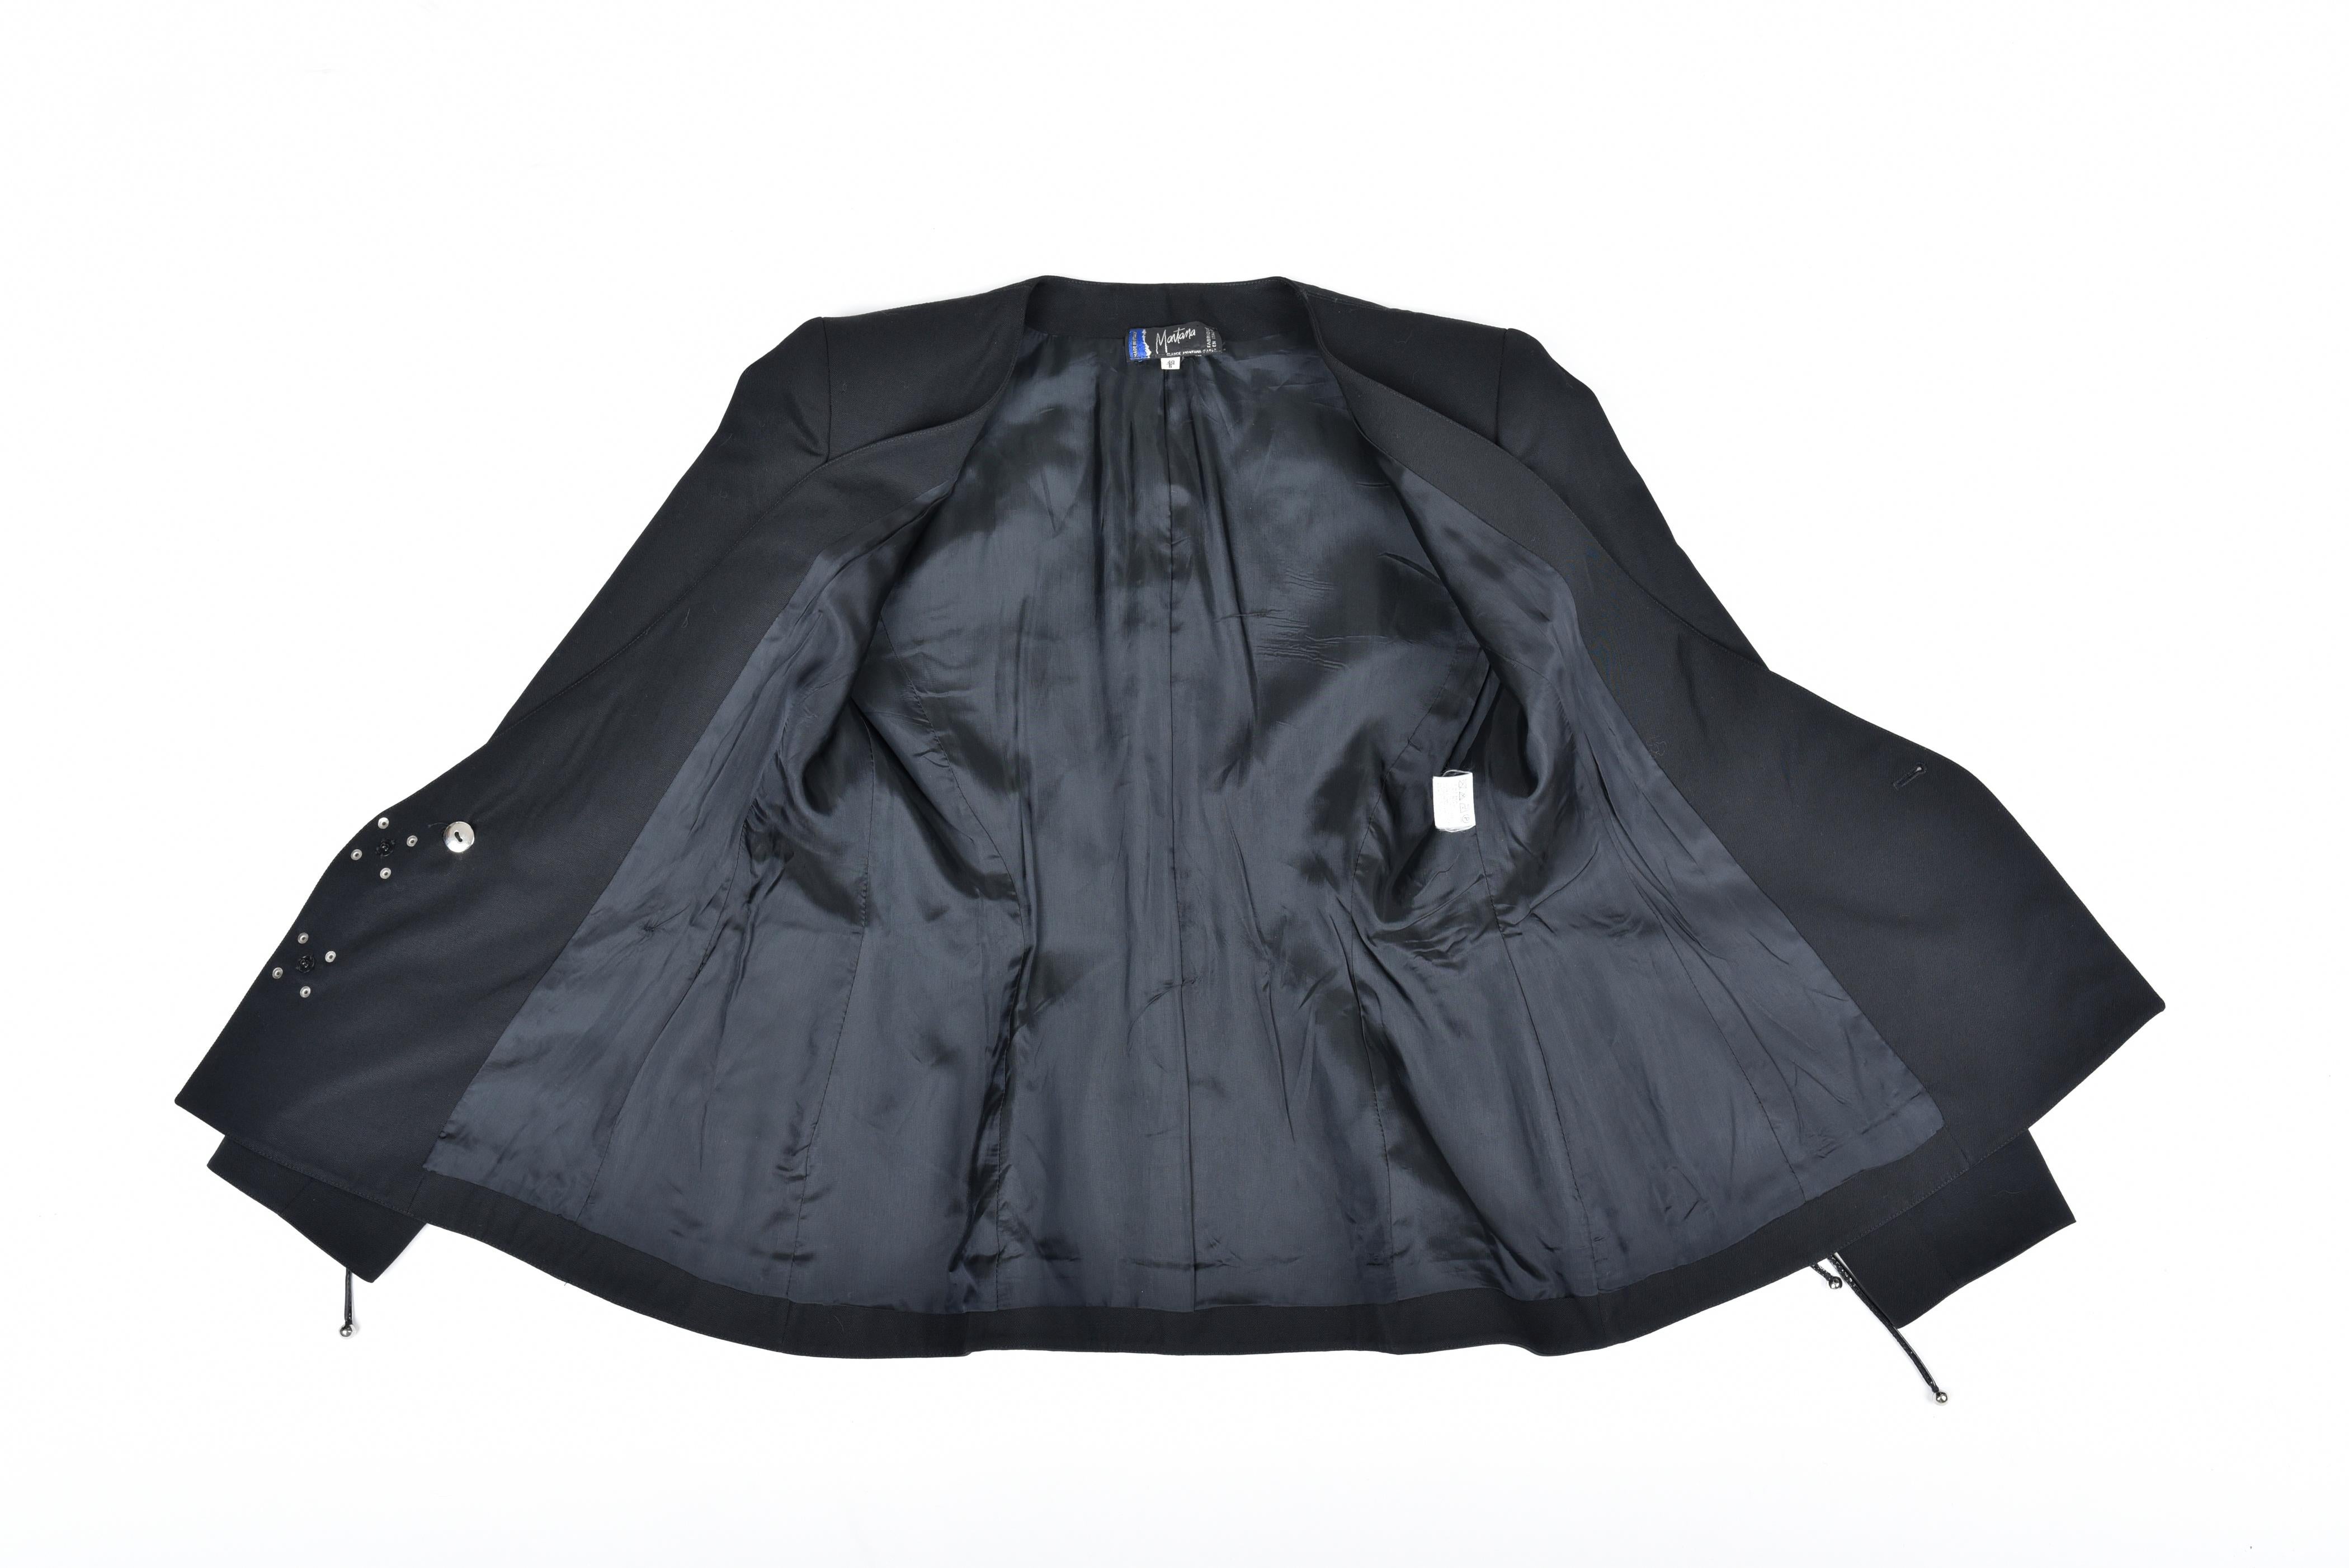 Ca. 1988-1992

Frankreich

Schöne schwarze Tergal-Smokingjacke von Claude Montana. Ausgeschnittener Anzug, der zu den Hüften passt und auf der Vorderseite mit V-Löffelung versehen ist. Crossed Befestigung mit Pressnieten und Diamantpunkt-Applikation